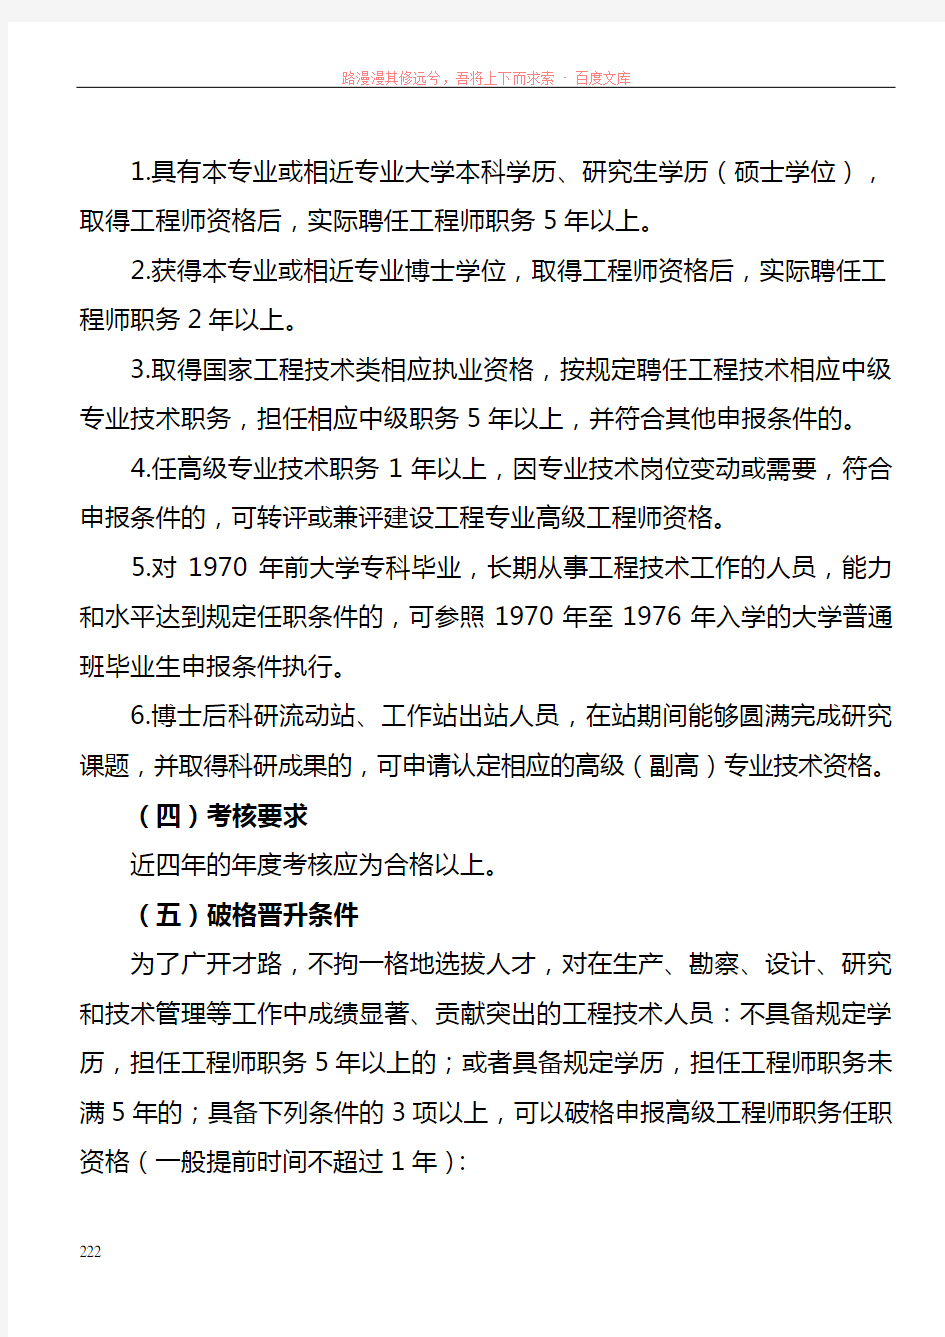 浙江省高级工程师资格评审范围和条件